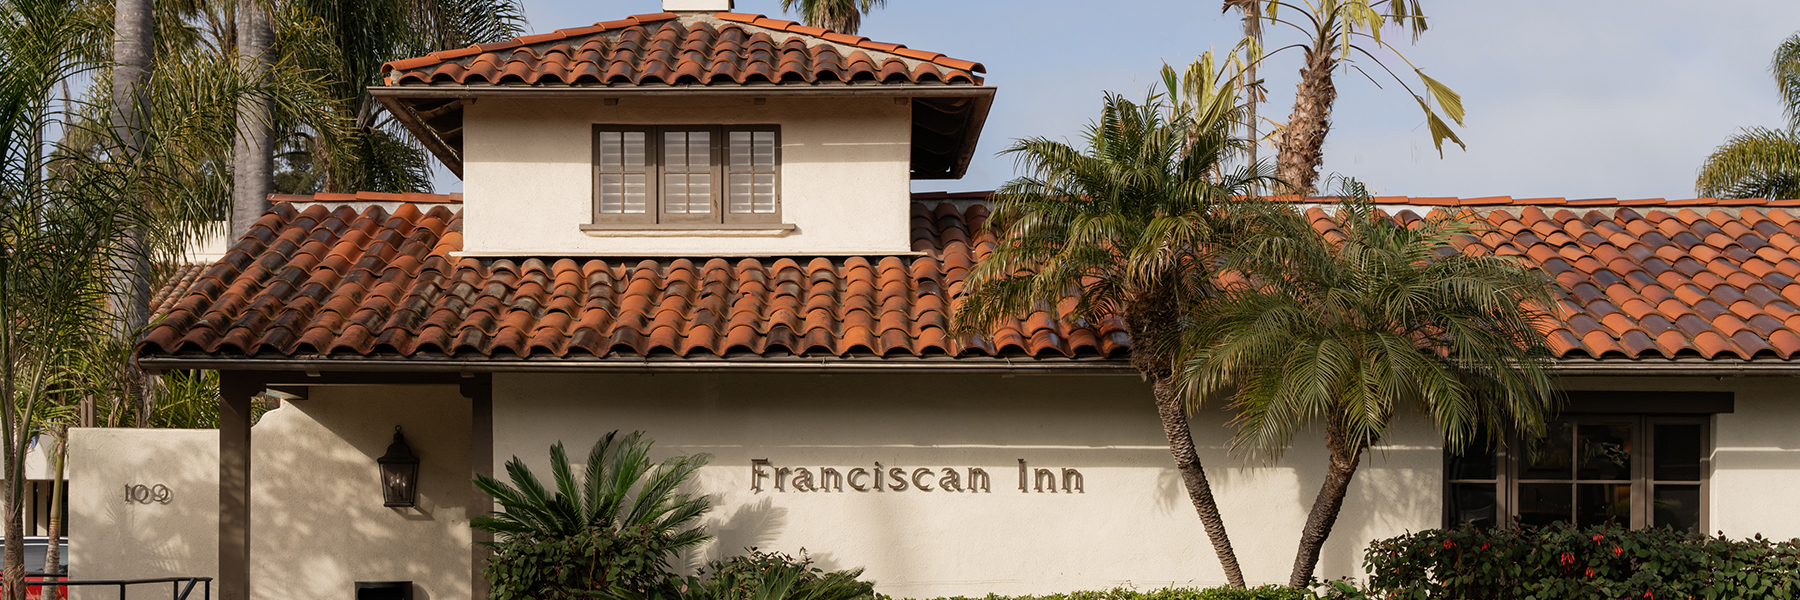 Stay and Enjoy at The Franciscan Hotel, Santa Barbara